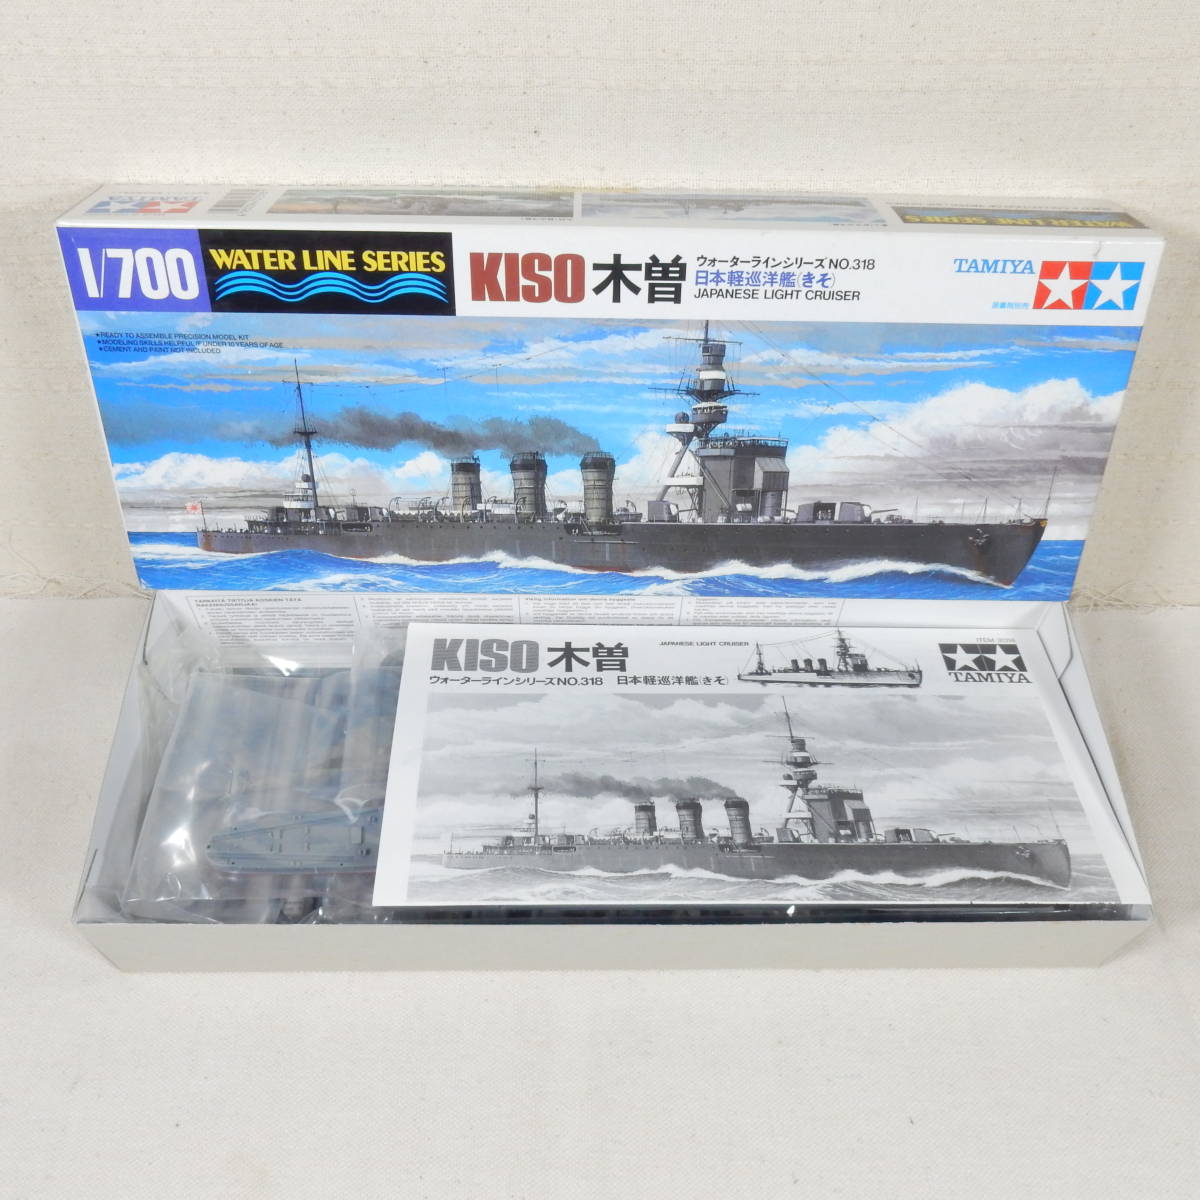 (17C36) 日本軽巡洋艦 木曽(きそ) タミヤ 1/700 ウォーターラインシリーズ NO.318 内袋未開封 未組立て_画像1